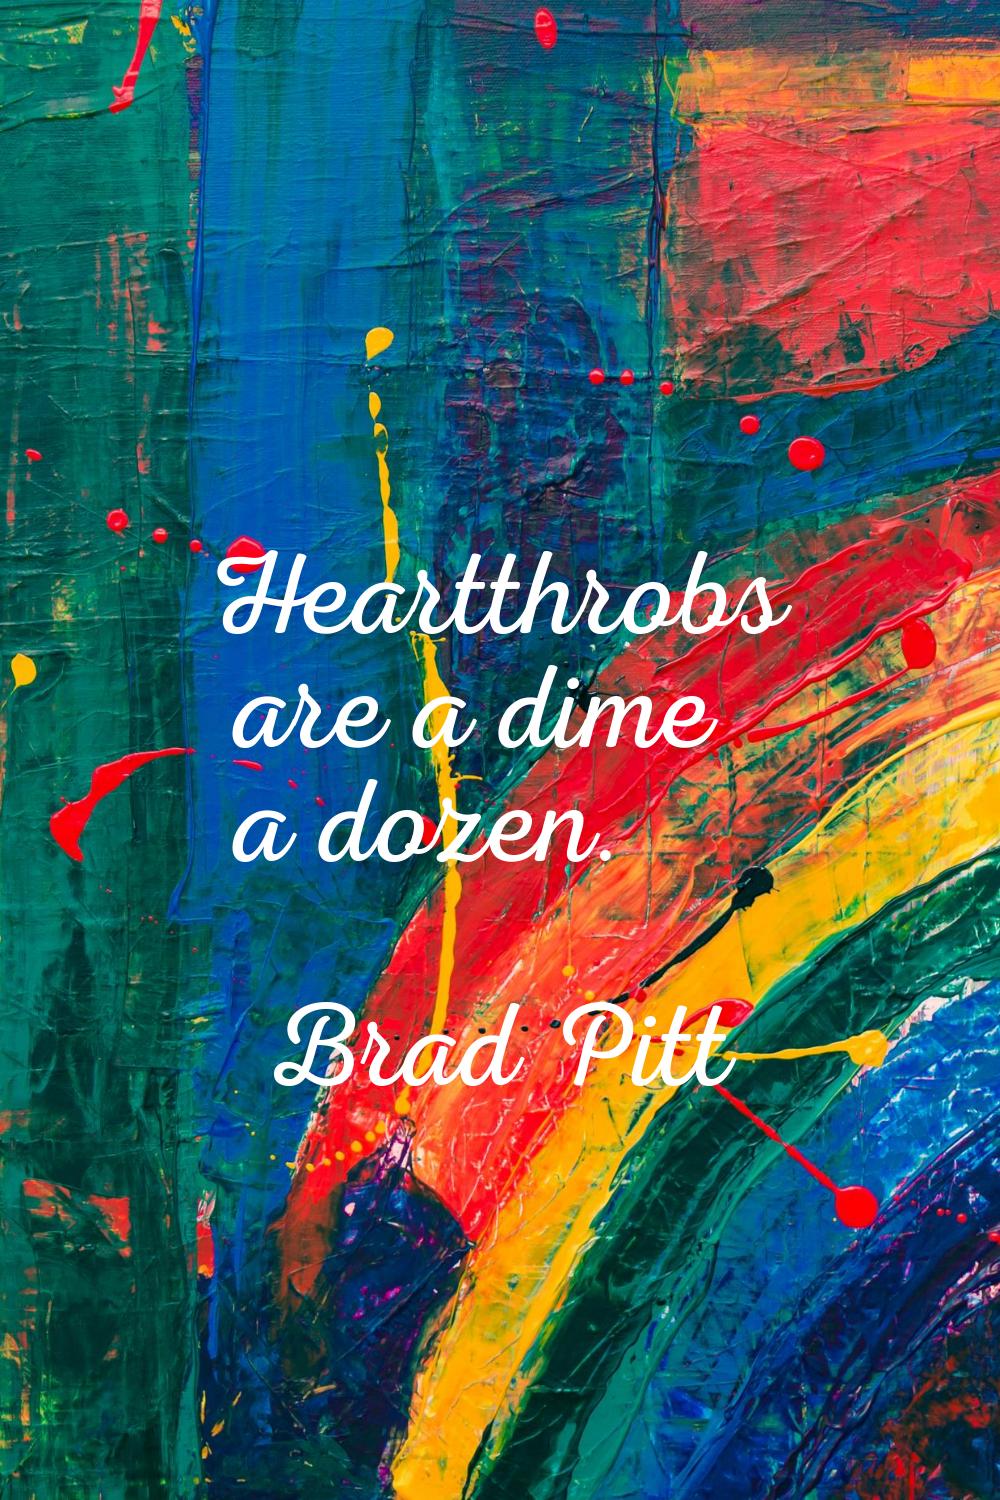 Heartthrobs are a dime a dozen.